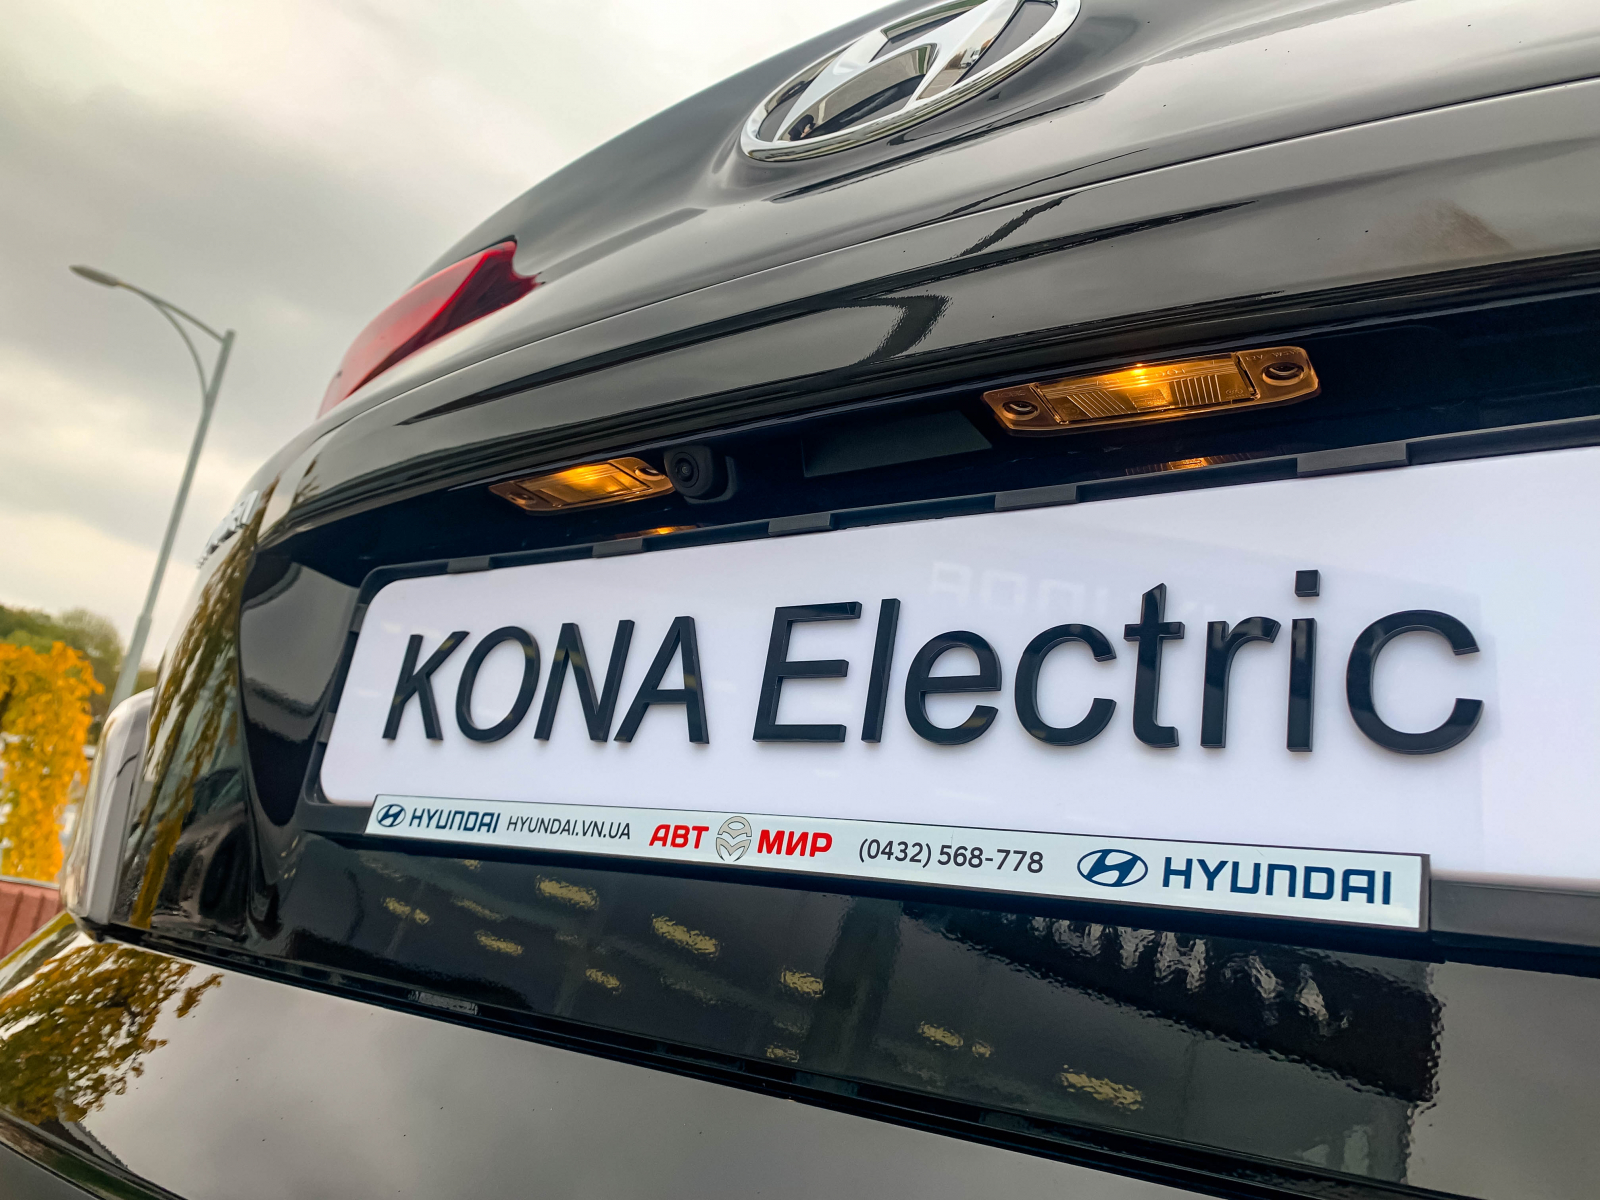 Нова KONA Electric FL Dynamic. До кращого. До електрифікації. | Арія Моторс - фото 13